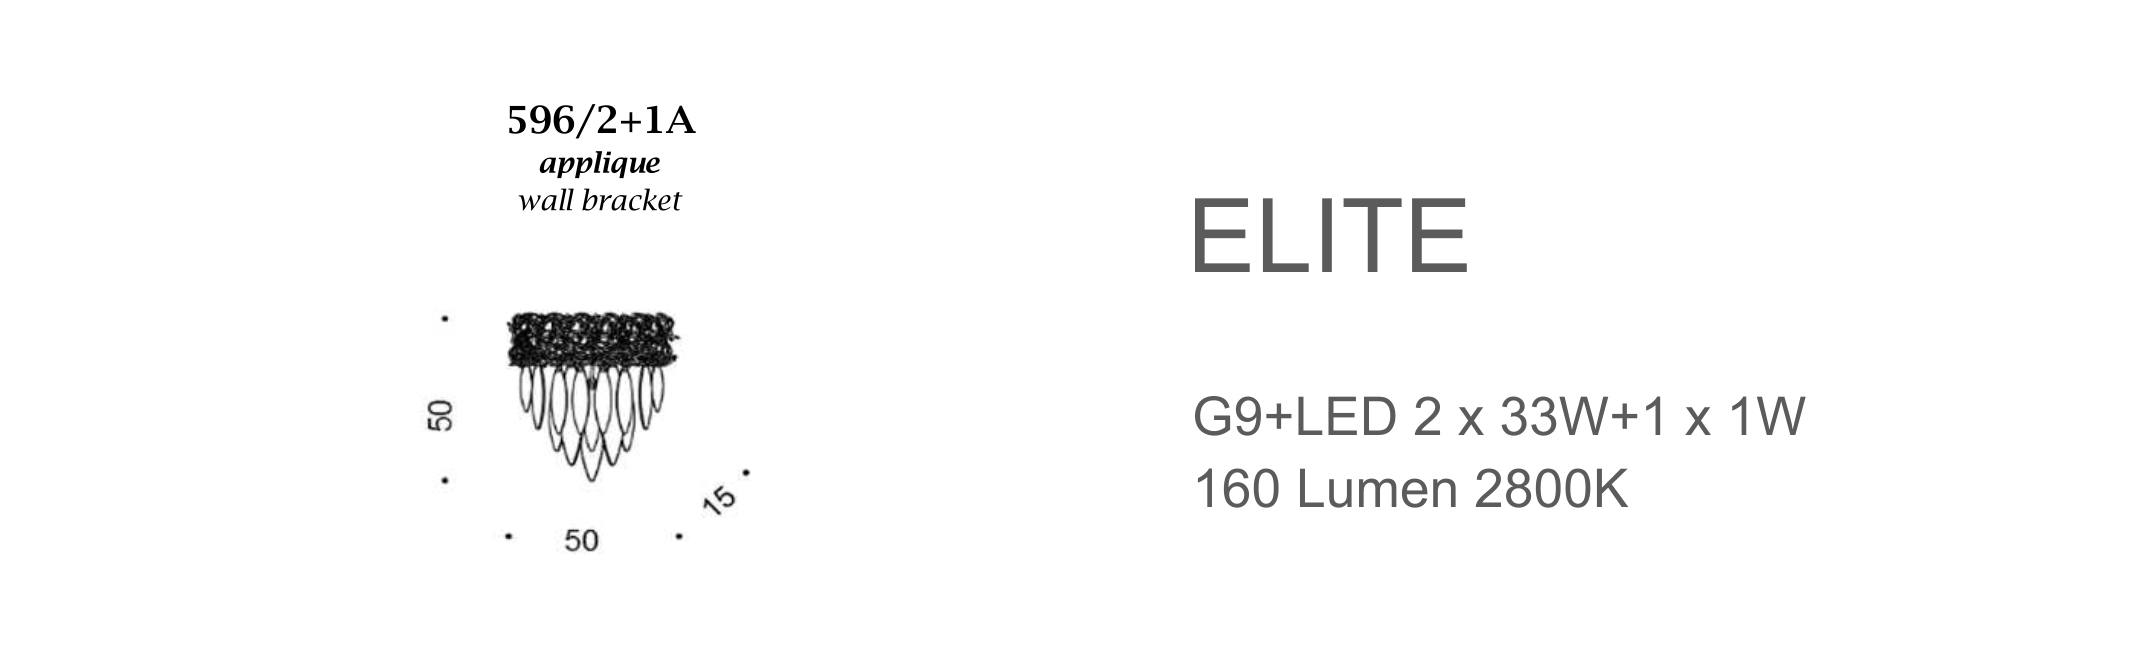 Elite 596/2+1A